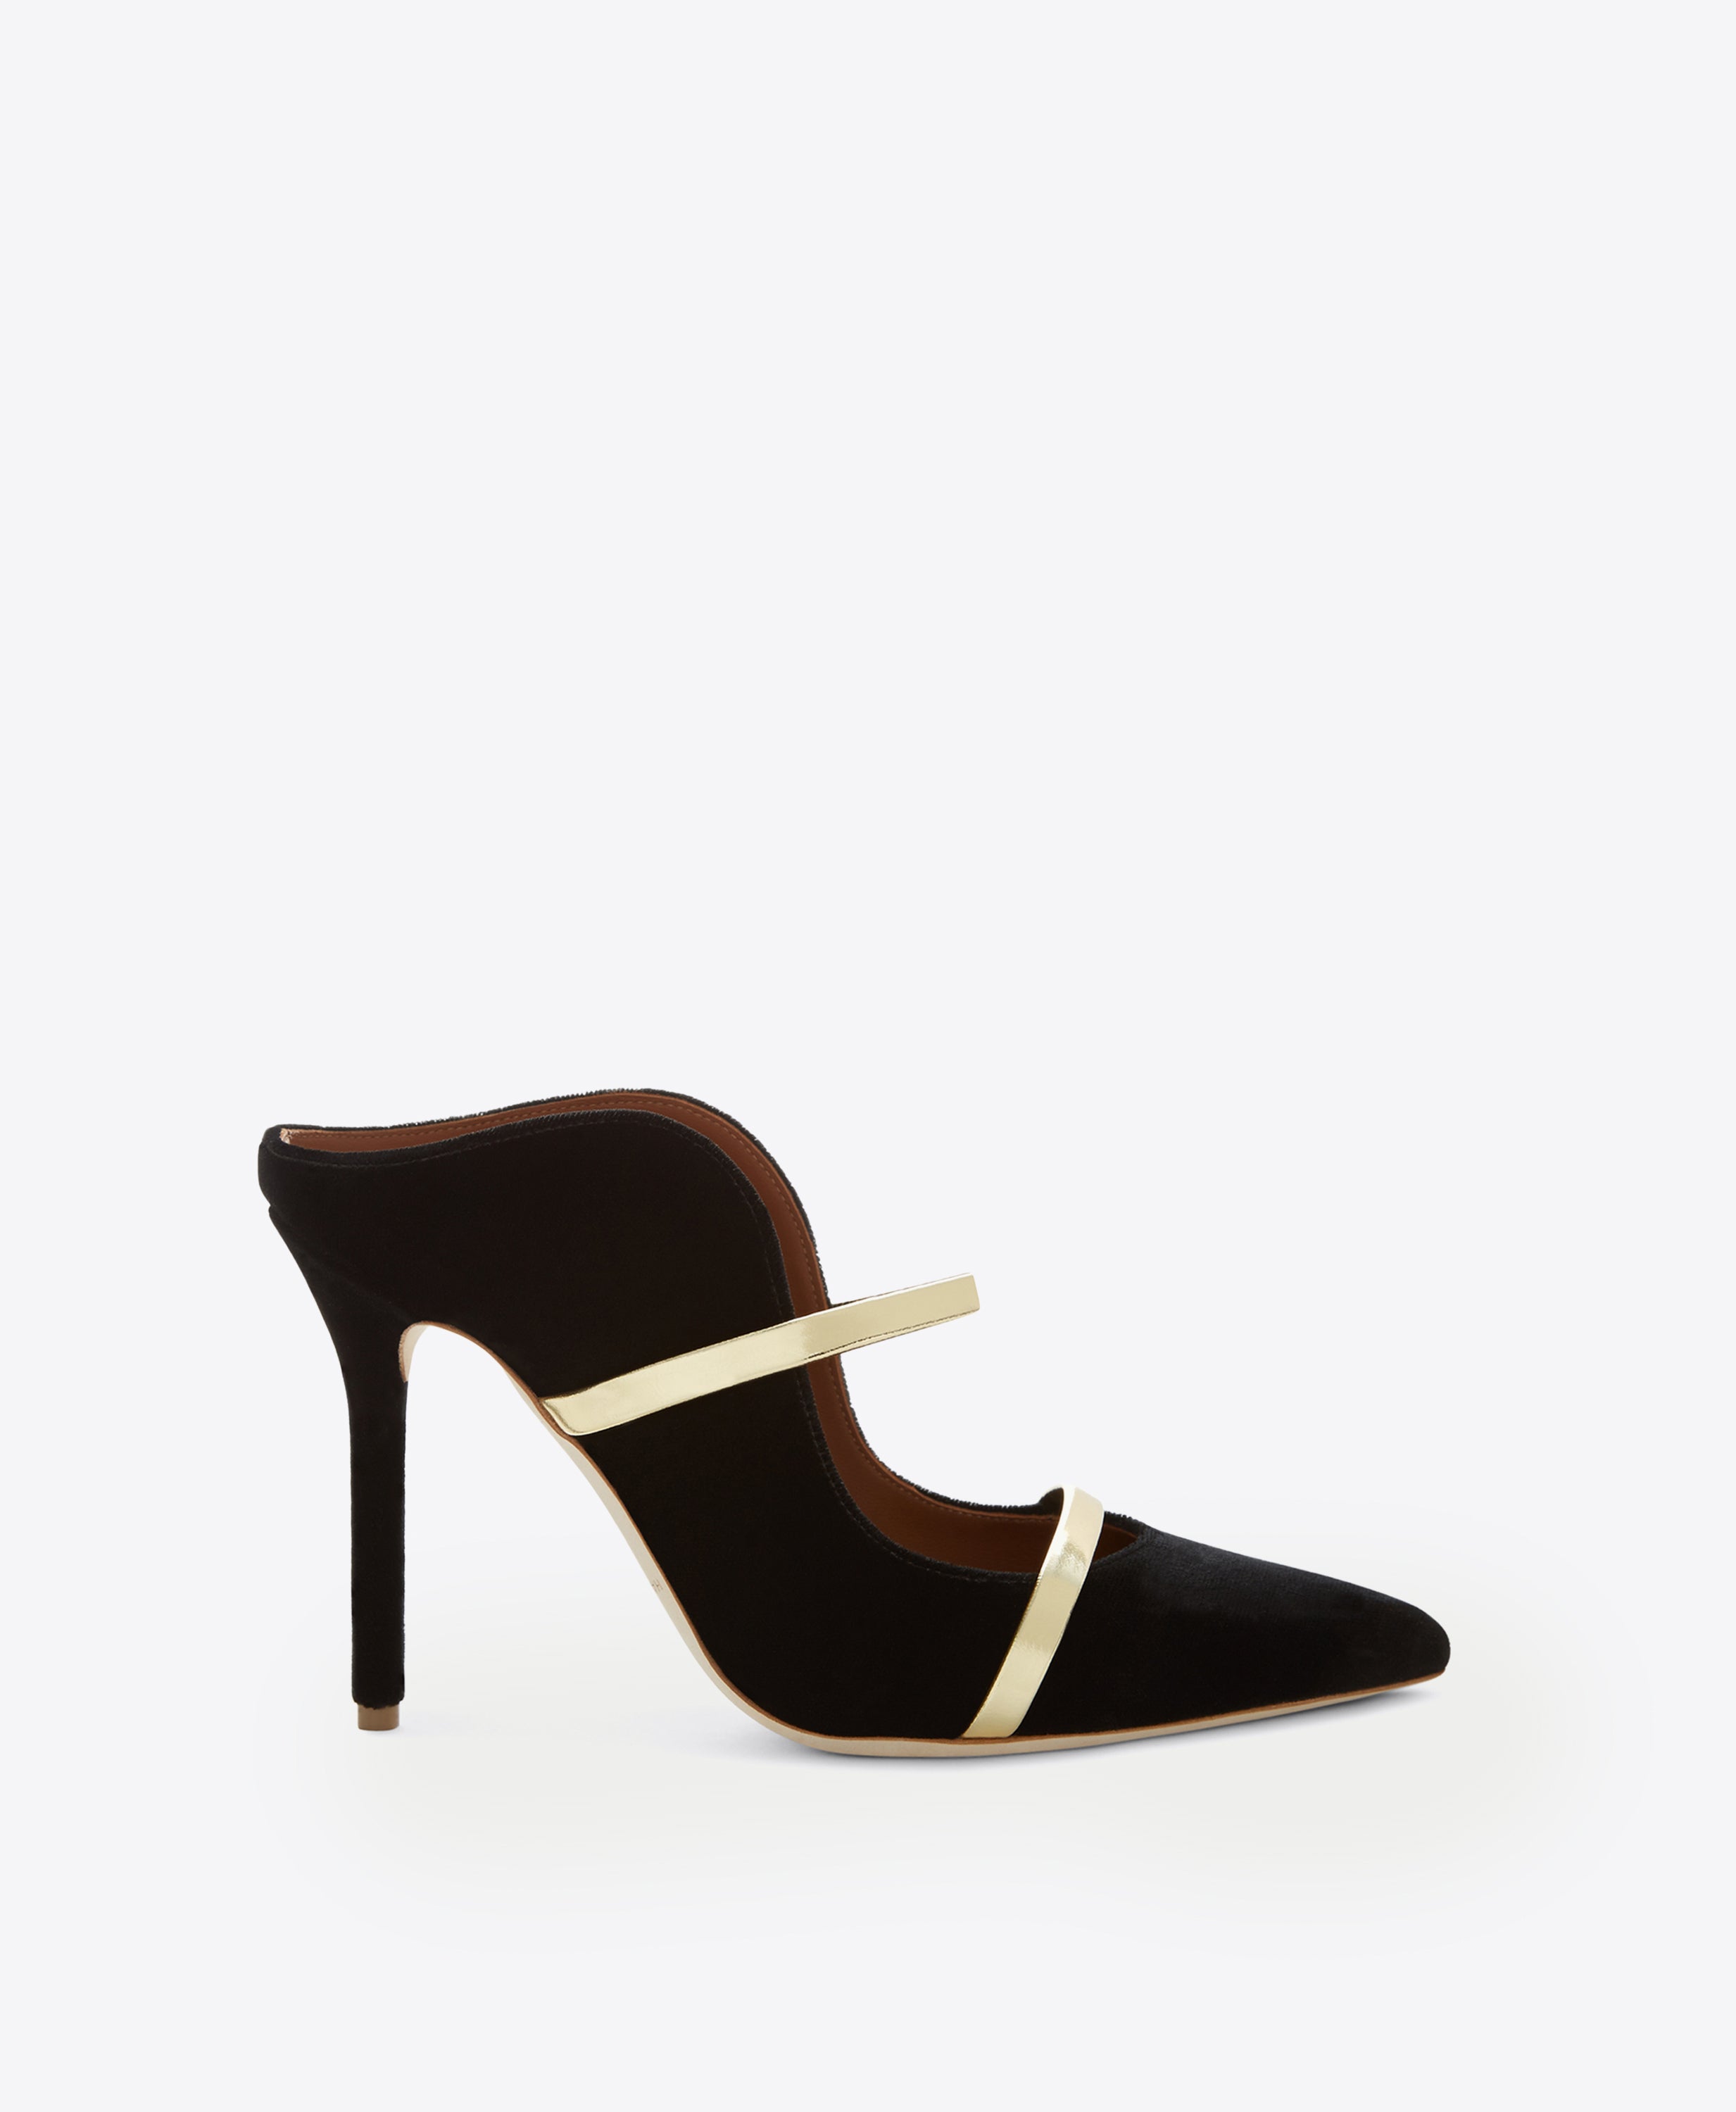 Elegant Gold And Black Ankle Strap High Heels Fashion Shoes | Fashion shoes,  Women shoes, Heels